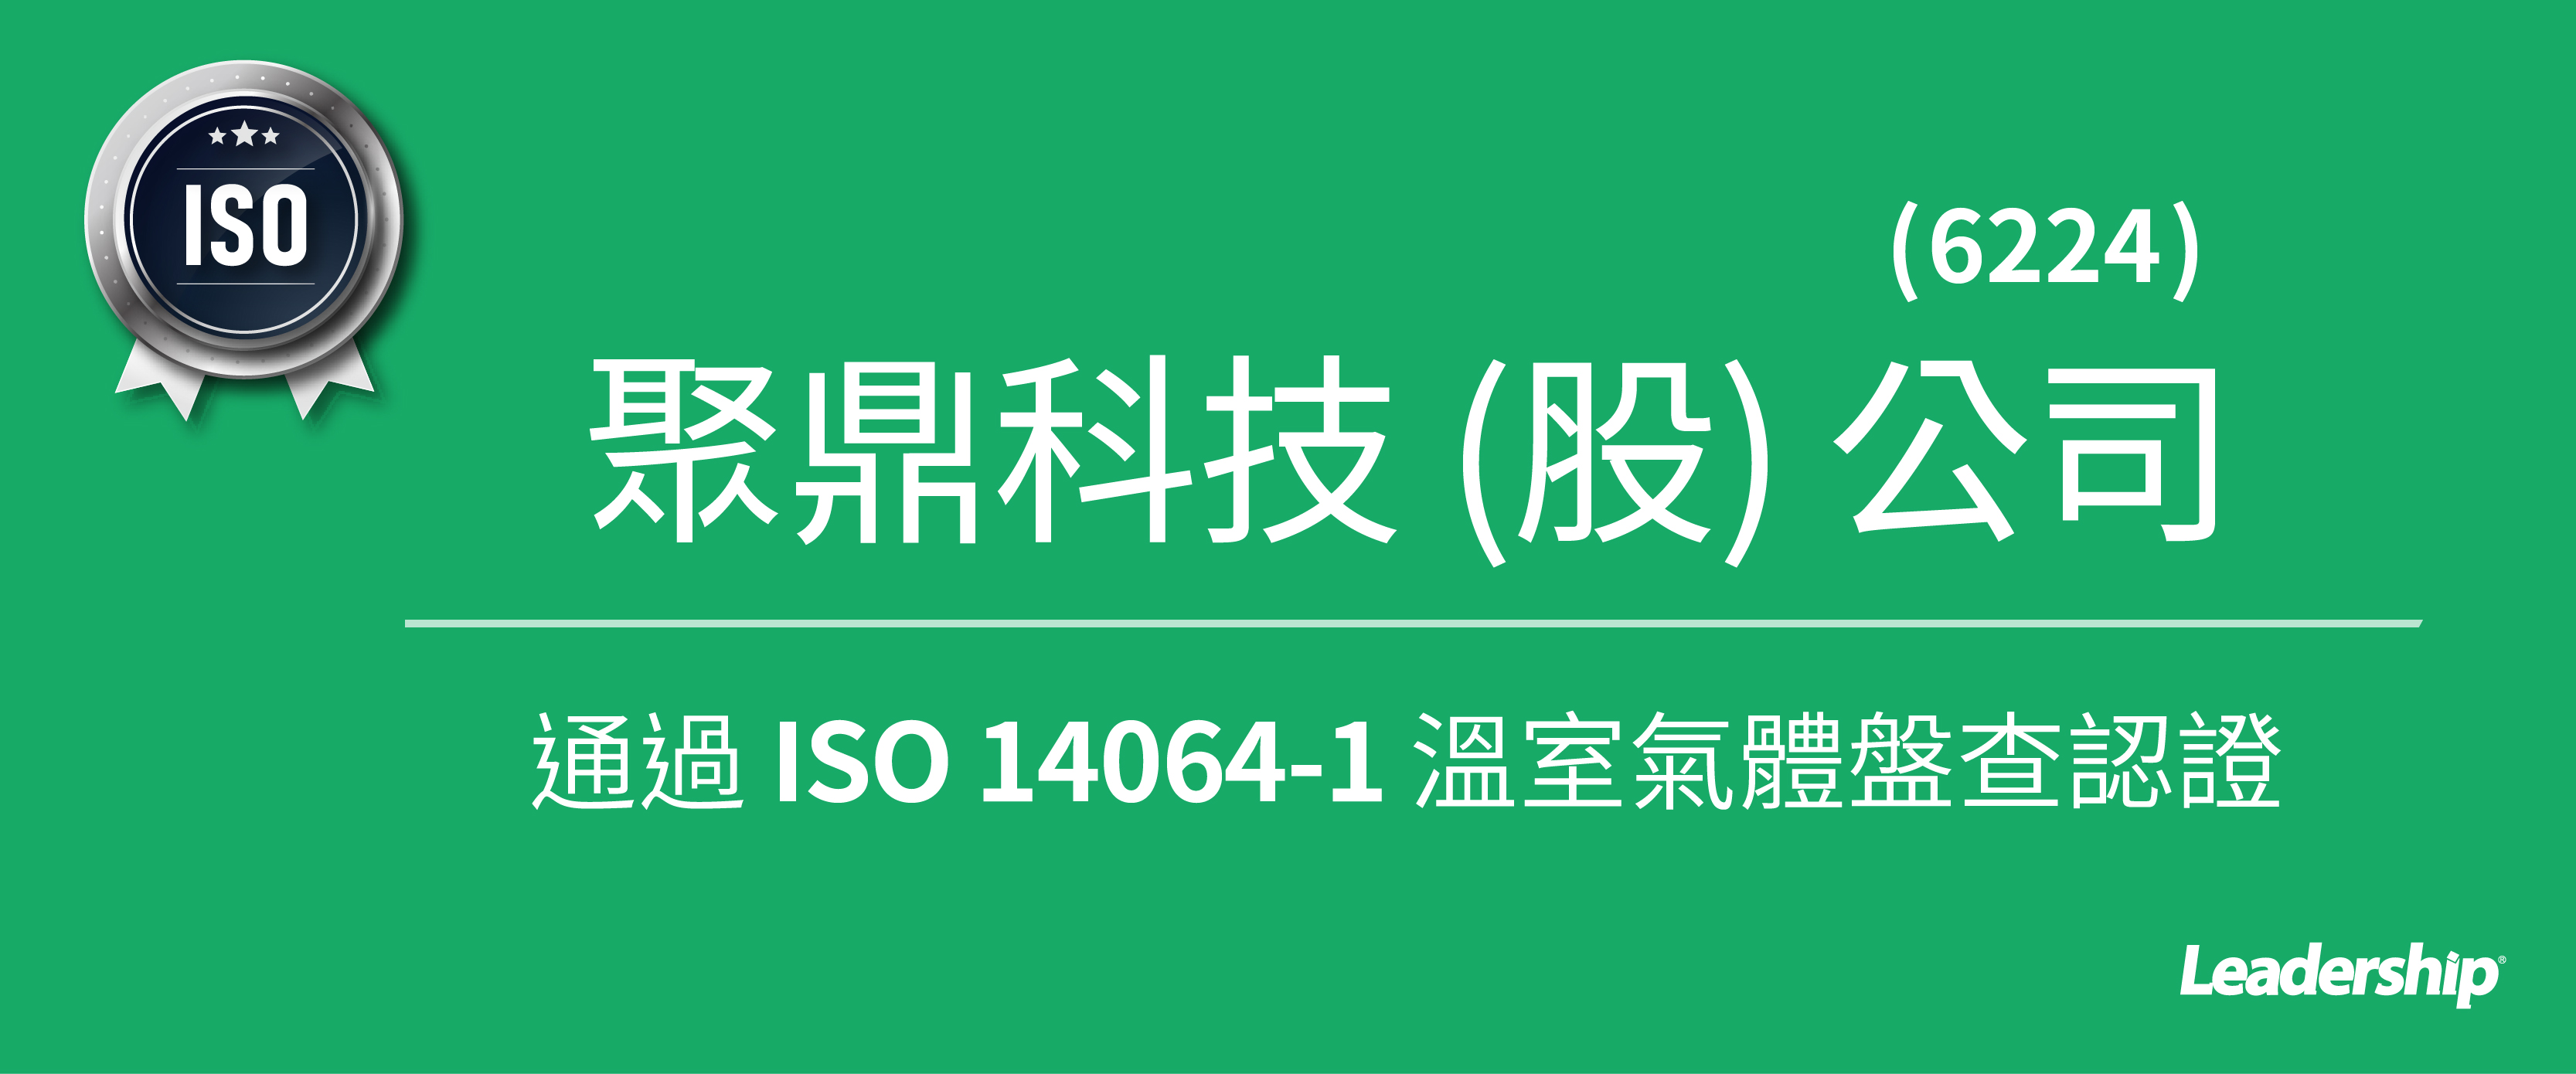 聚鼎科技 (6224) 通過 ISO 14064-1 溫室氣體盤查認證